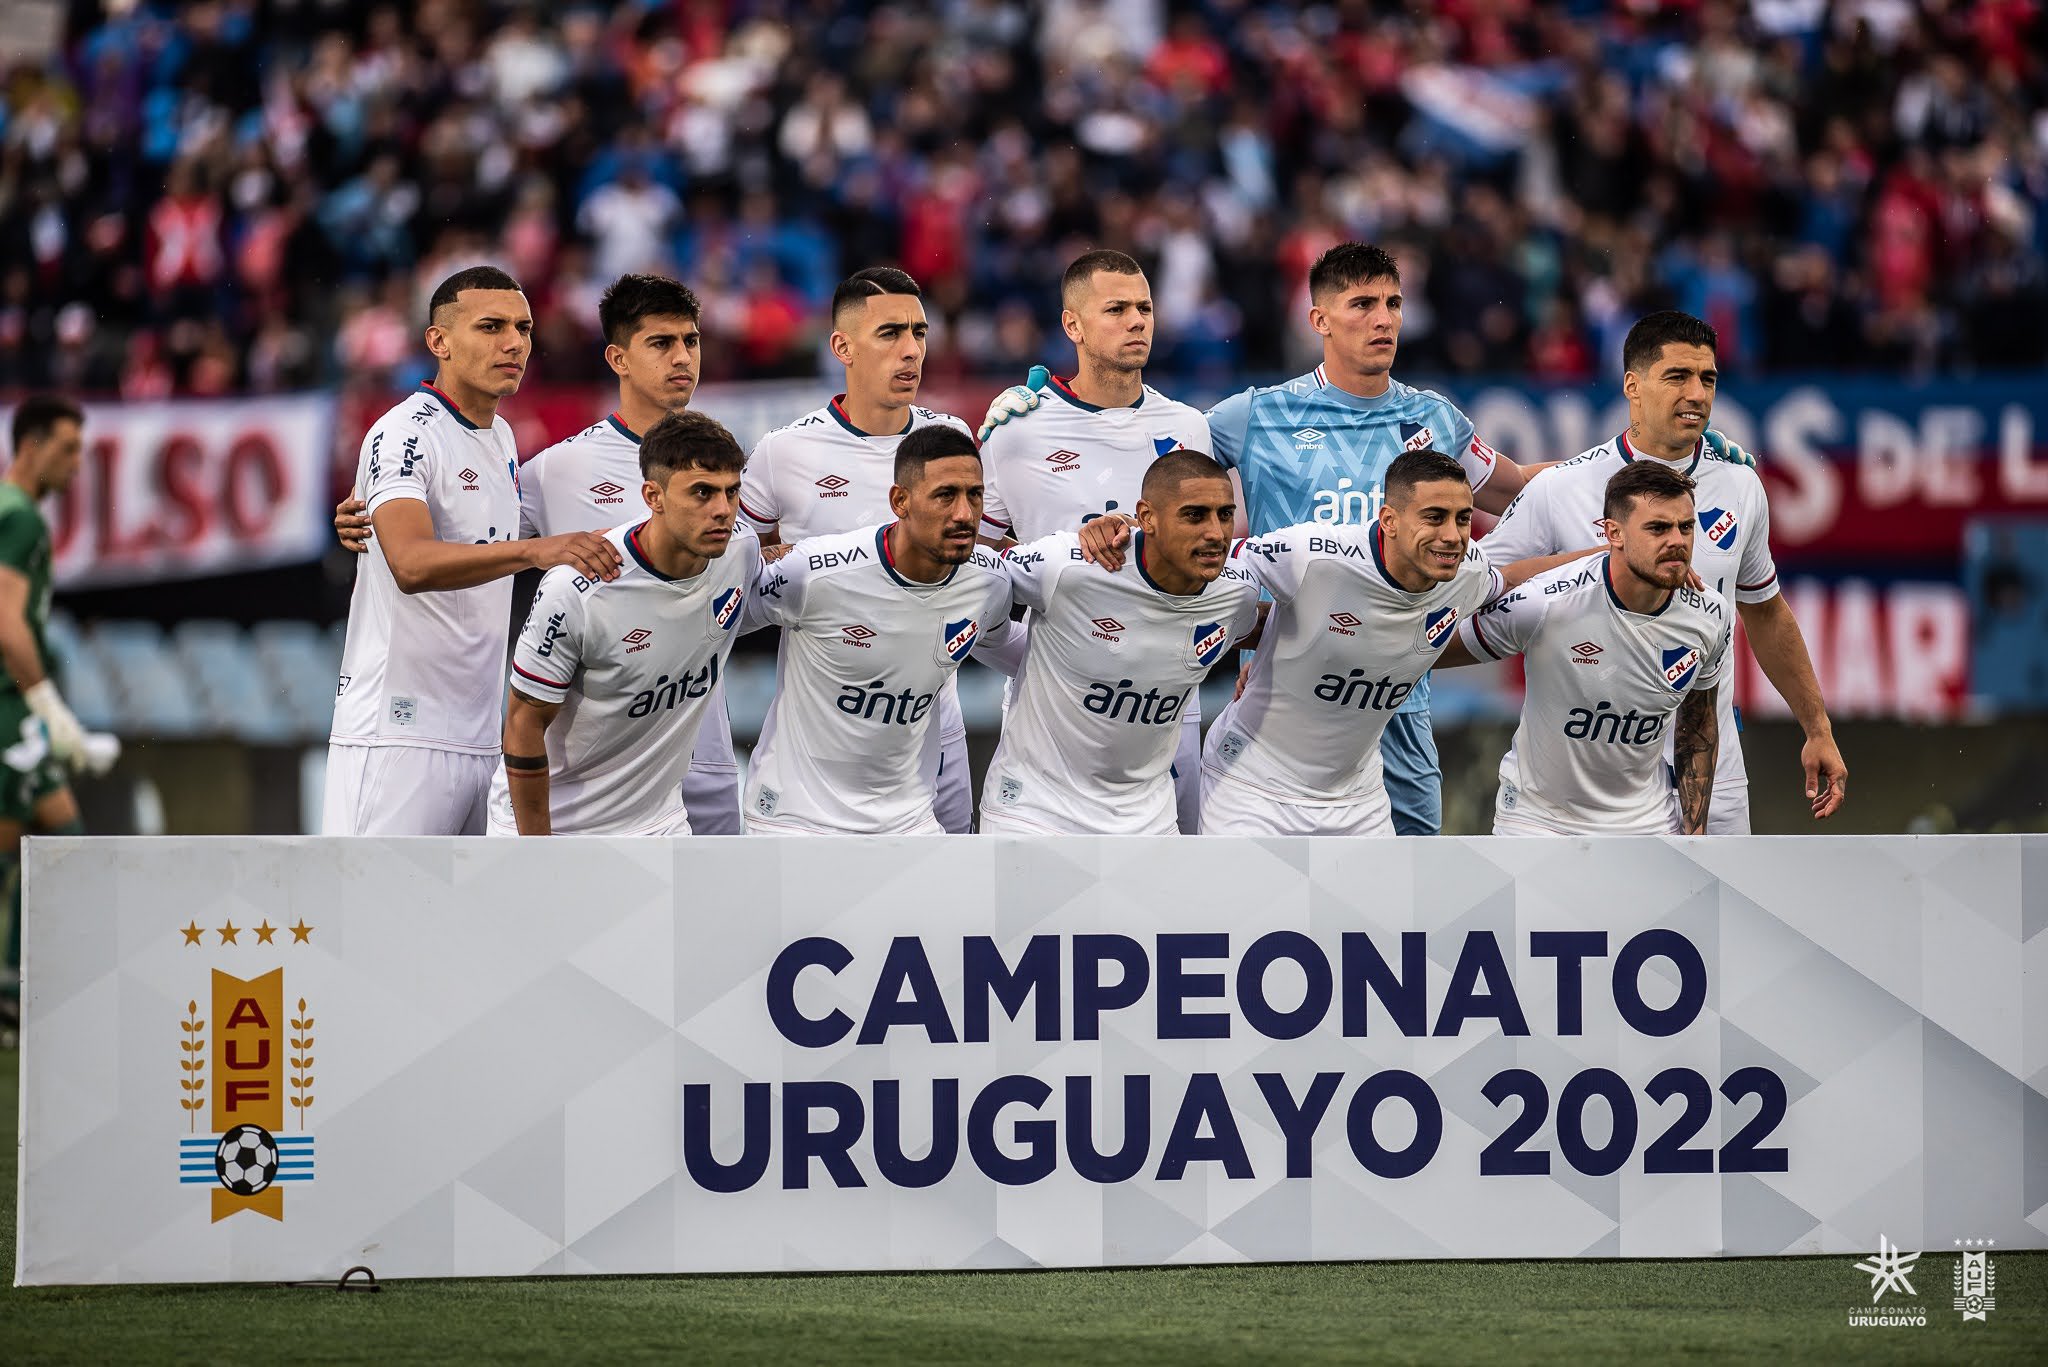 ANUAL: De esta manera se encuentra la Tabla Anual del Campeonato Uruguayo  2022. #Nacional es el único líder a 11 puntos de #Liverpool.…